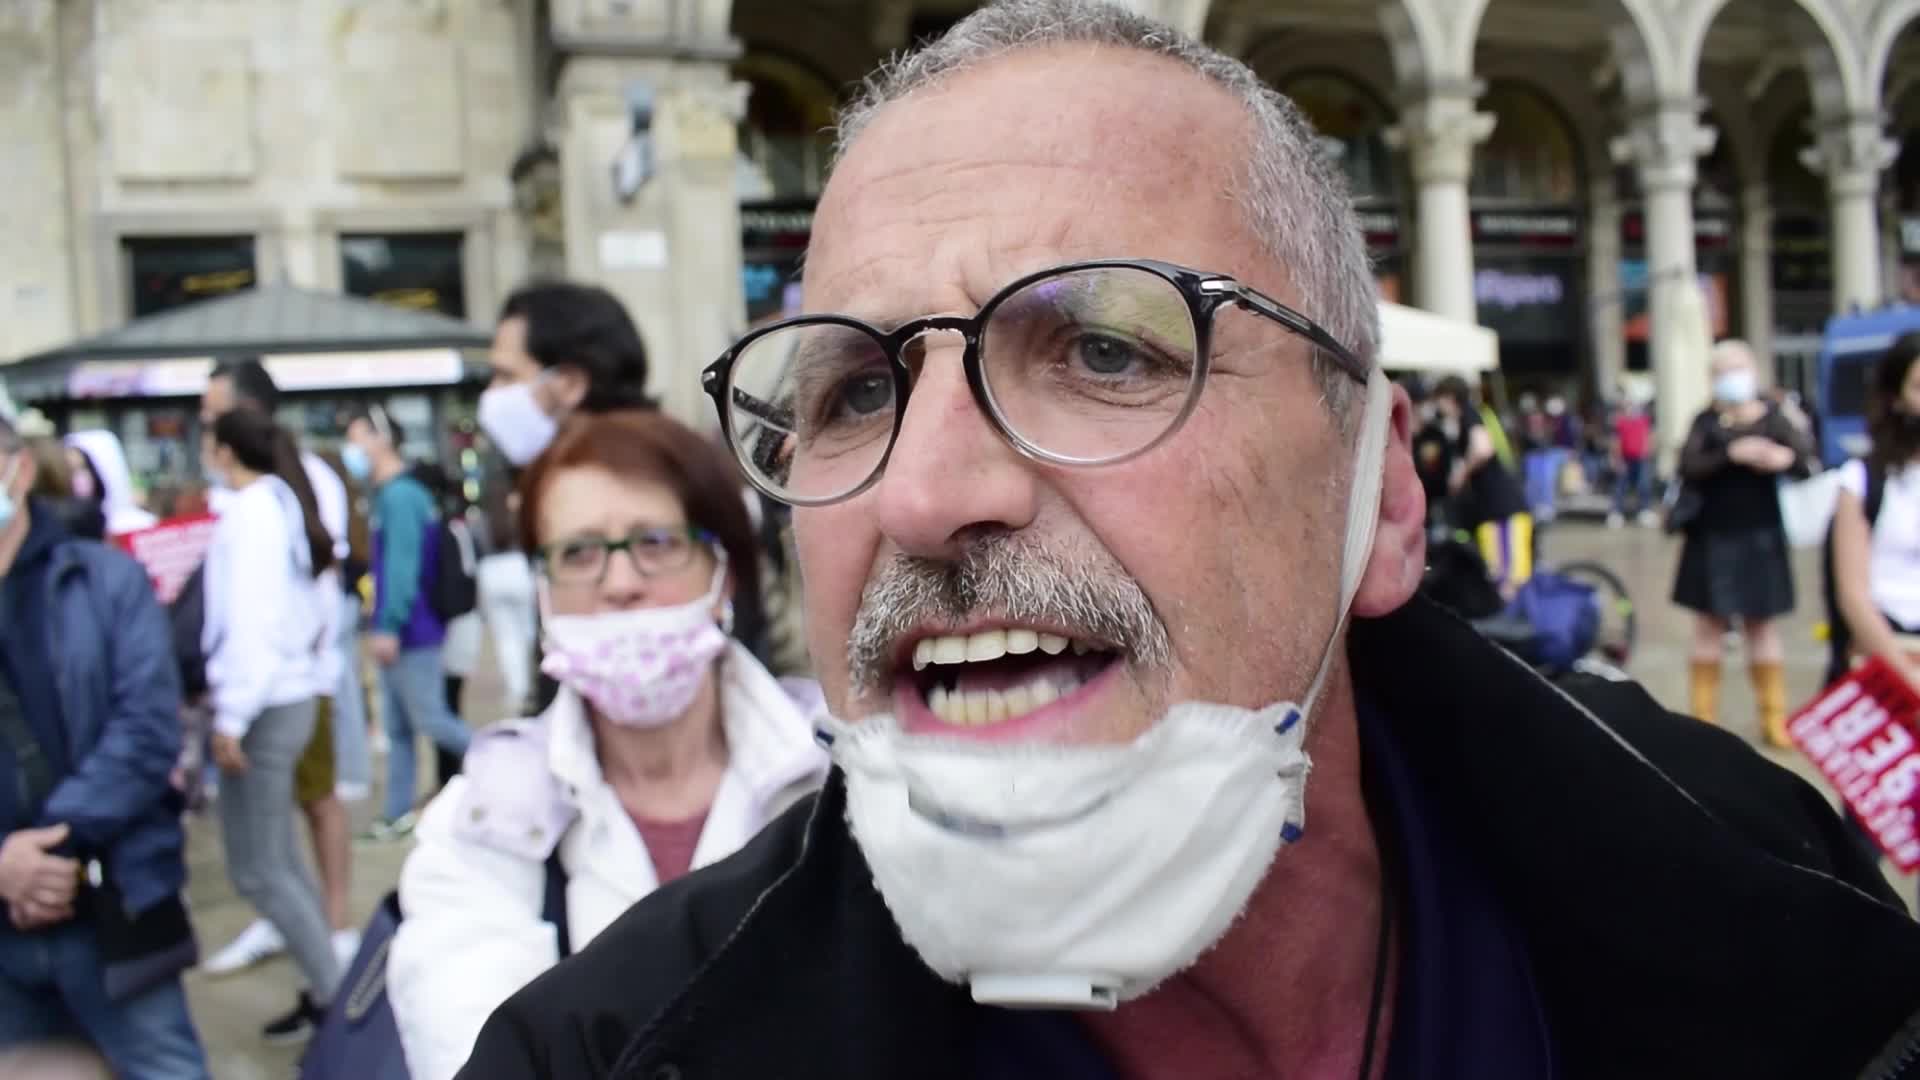 Milano, le voci dalla piazza contro il Ddl Zan: "Legge satanica contro la vita"